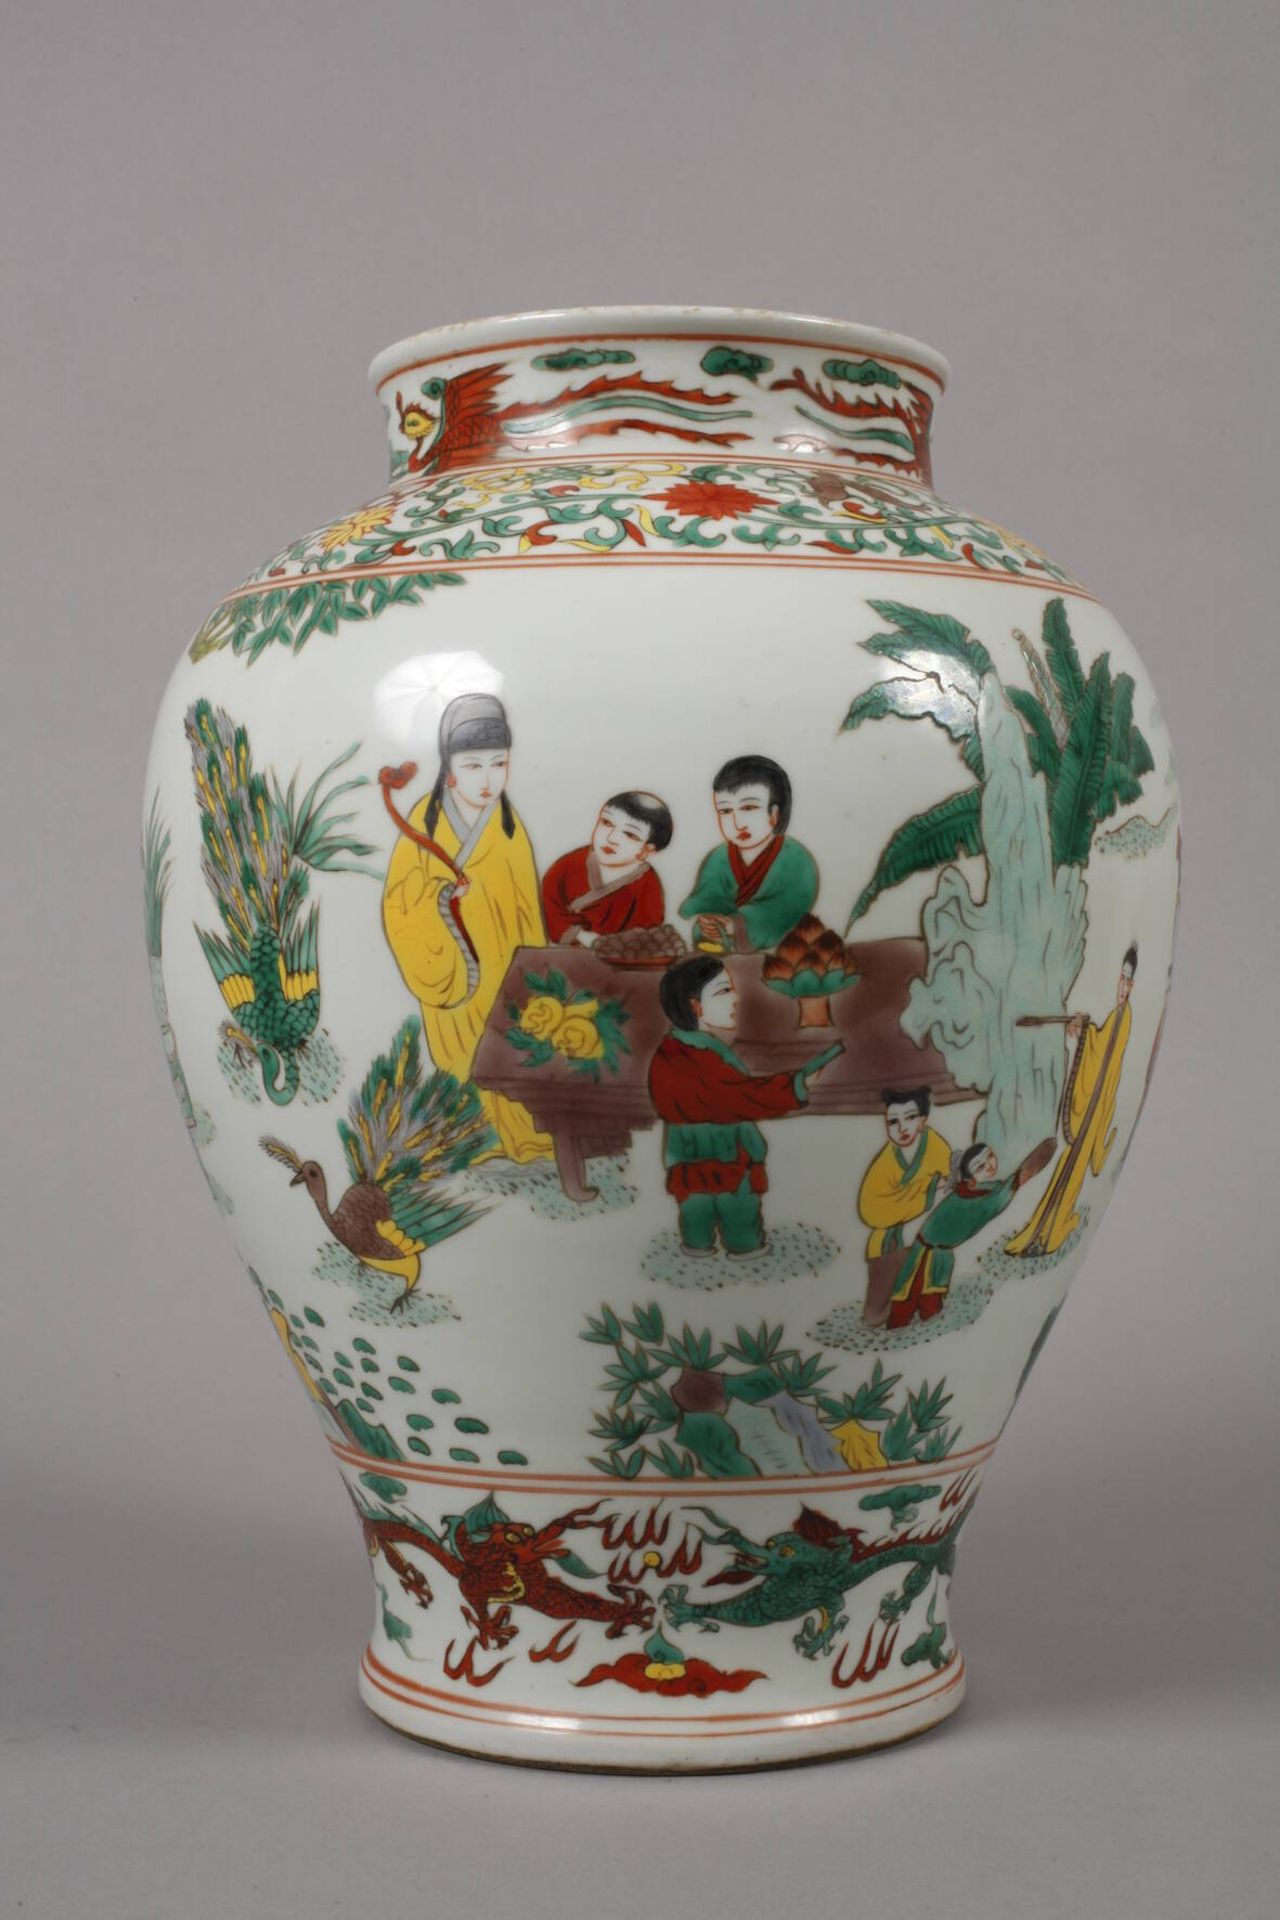 Vase Famille verte 19. Jh., ungemarkt, signiert, weiß glasiertes Porzellan in polychromer - Image 2 of 6